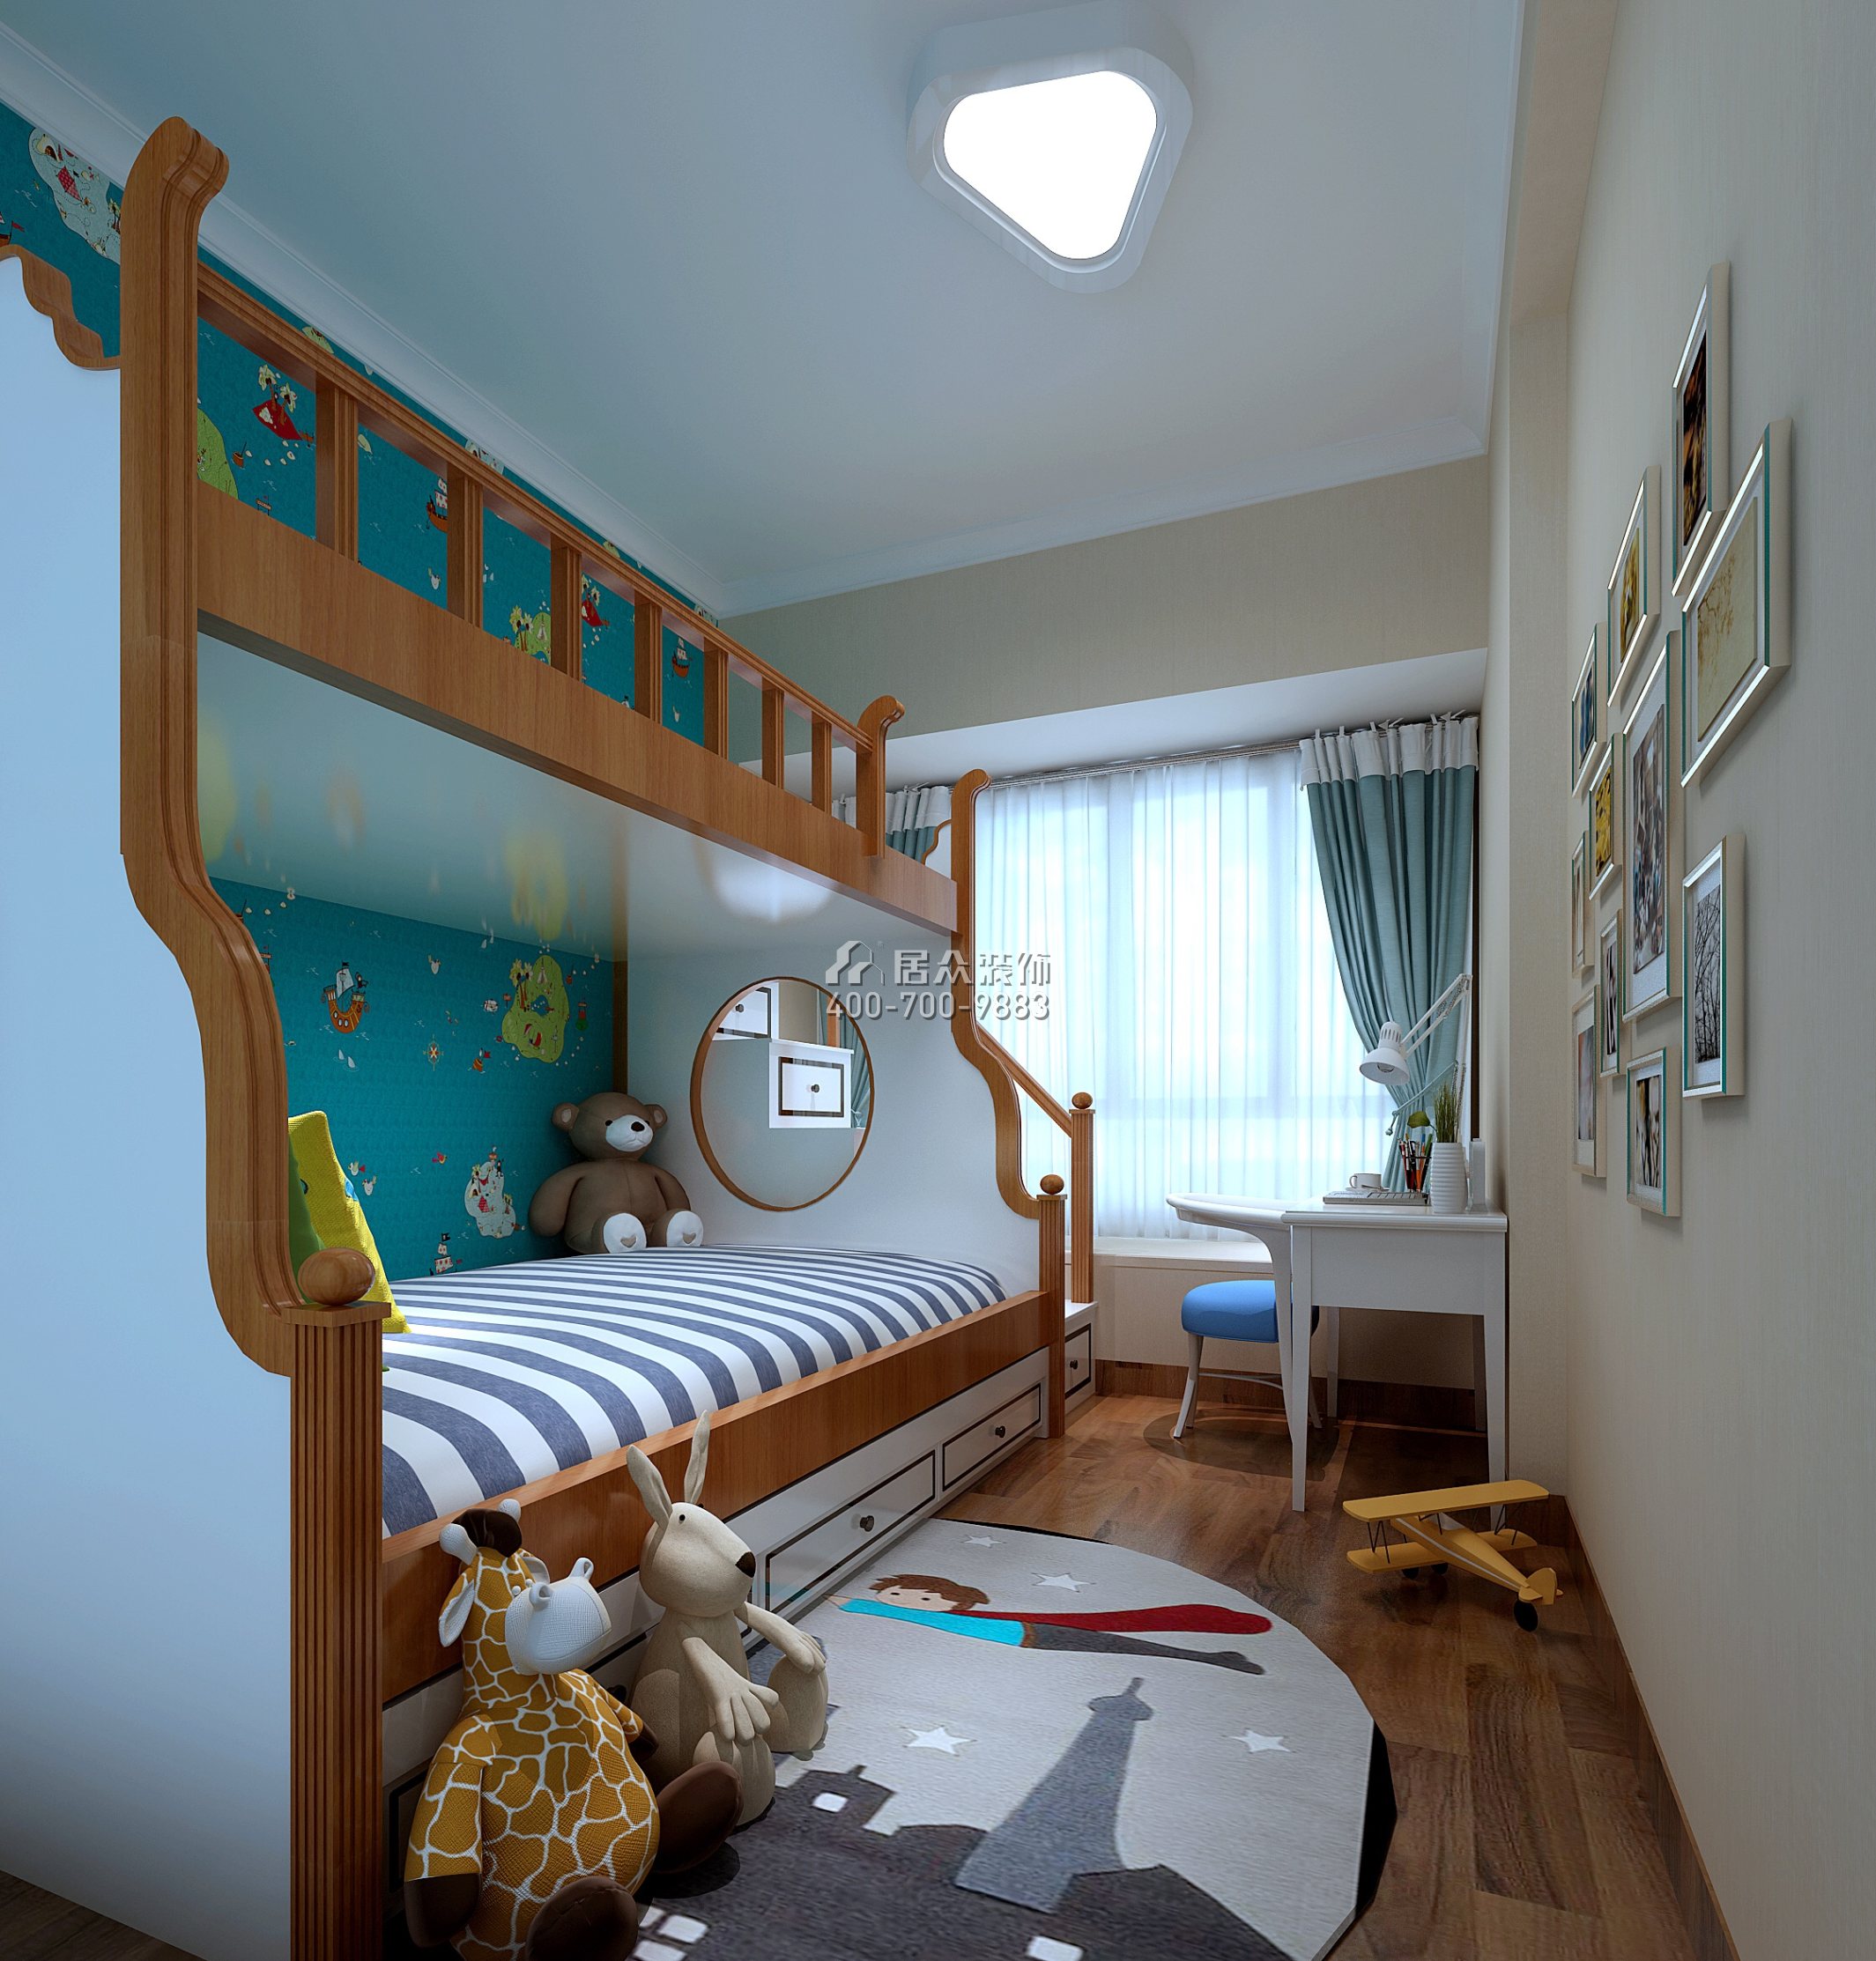 星河丹堤106平方米欧式风格平层户型儿童房装修效果图